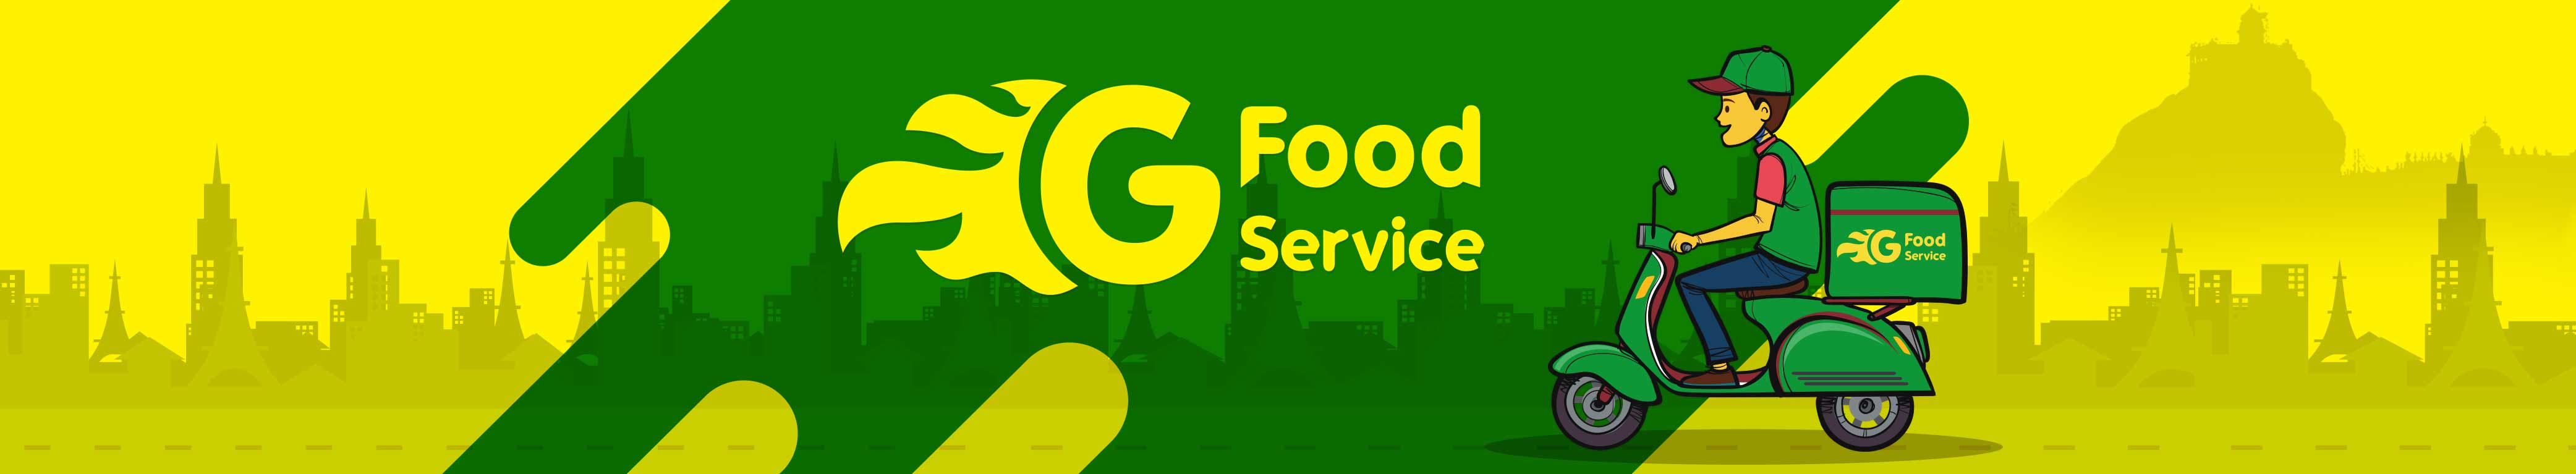 G Food Service Banner Image